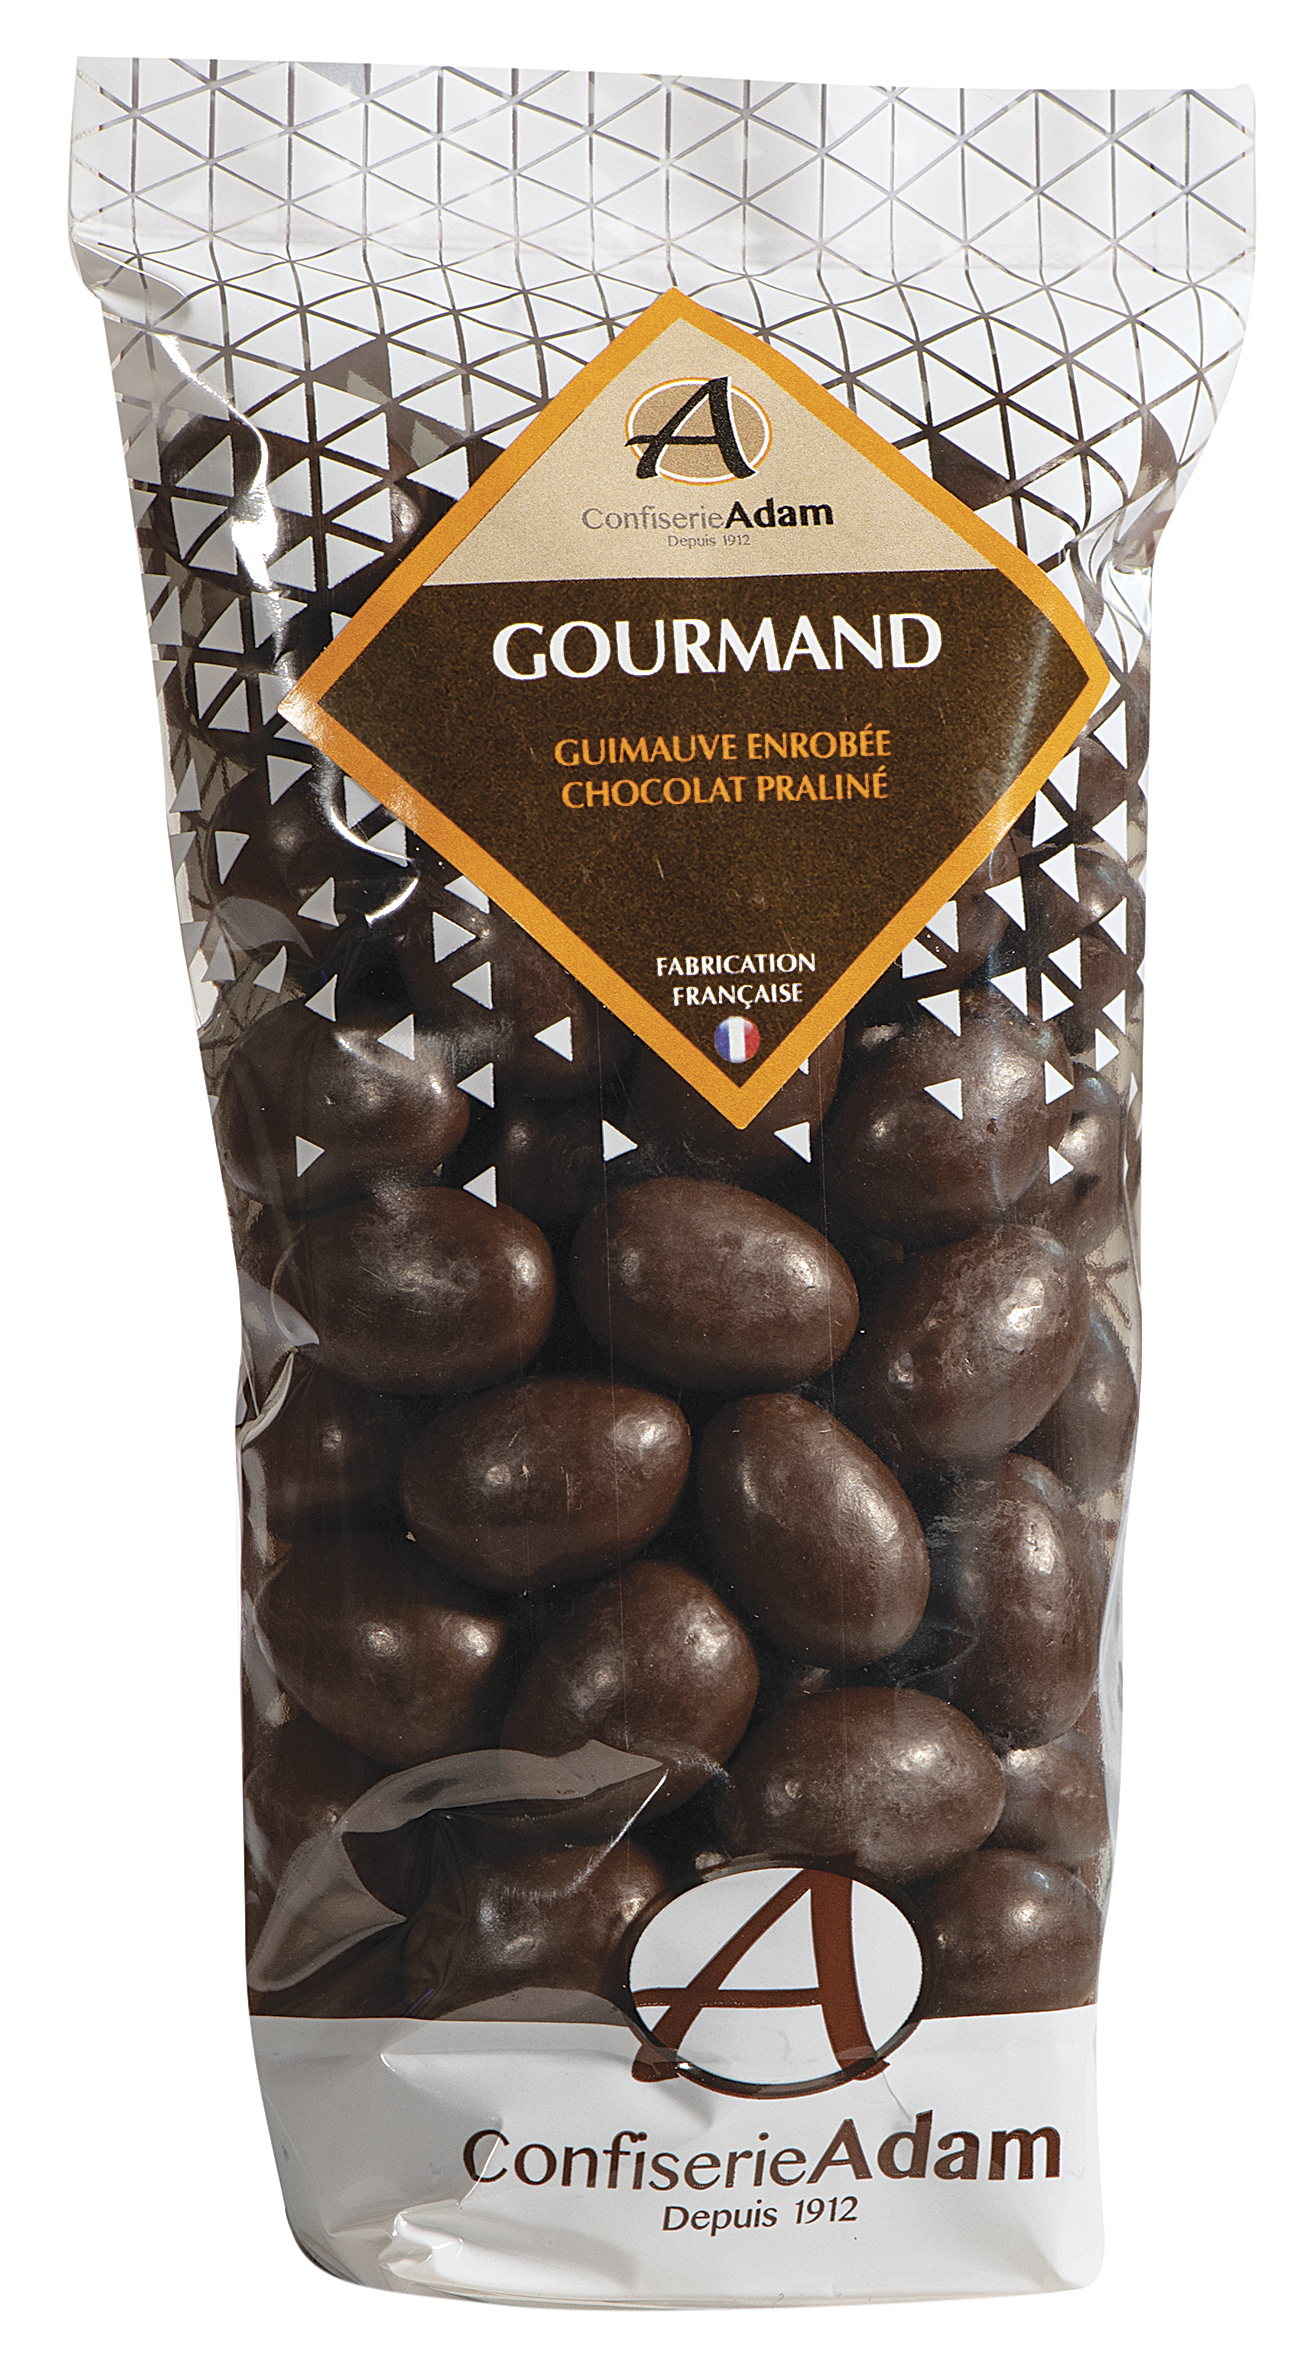 Guimauve Chocolat - Grégoire Pécou Chocolatier